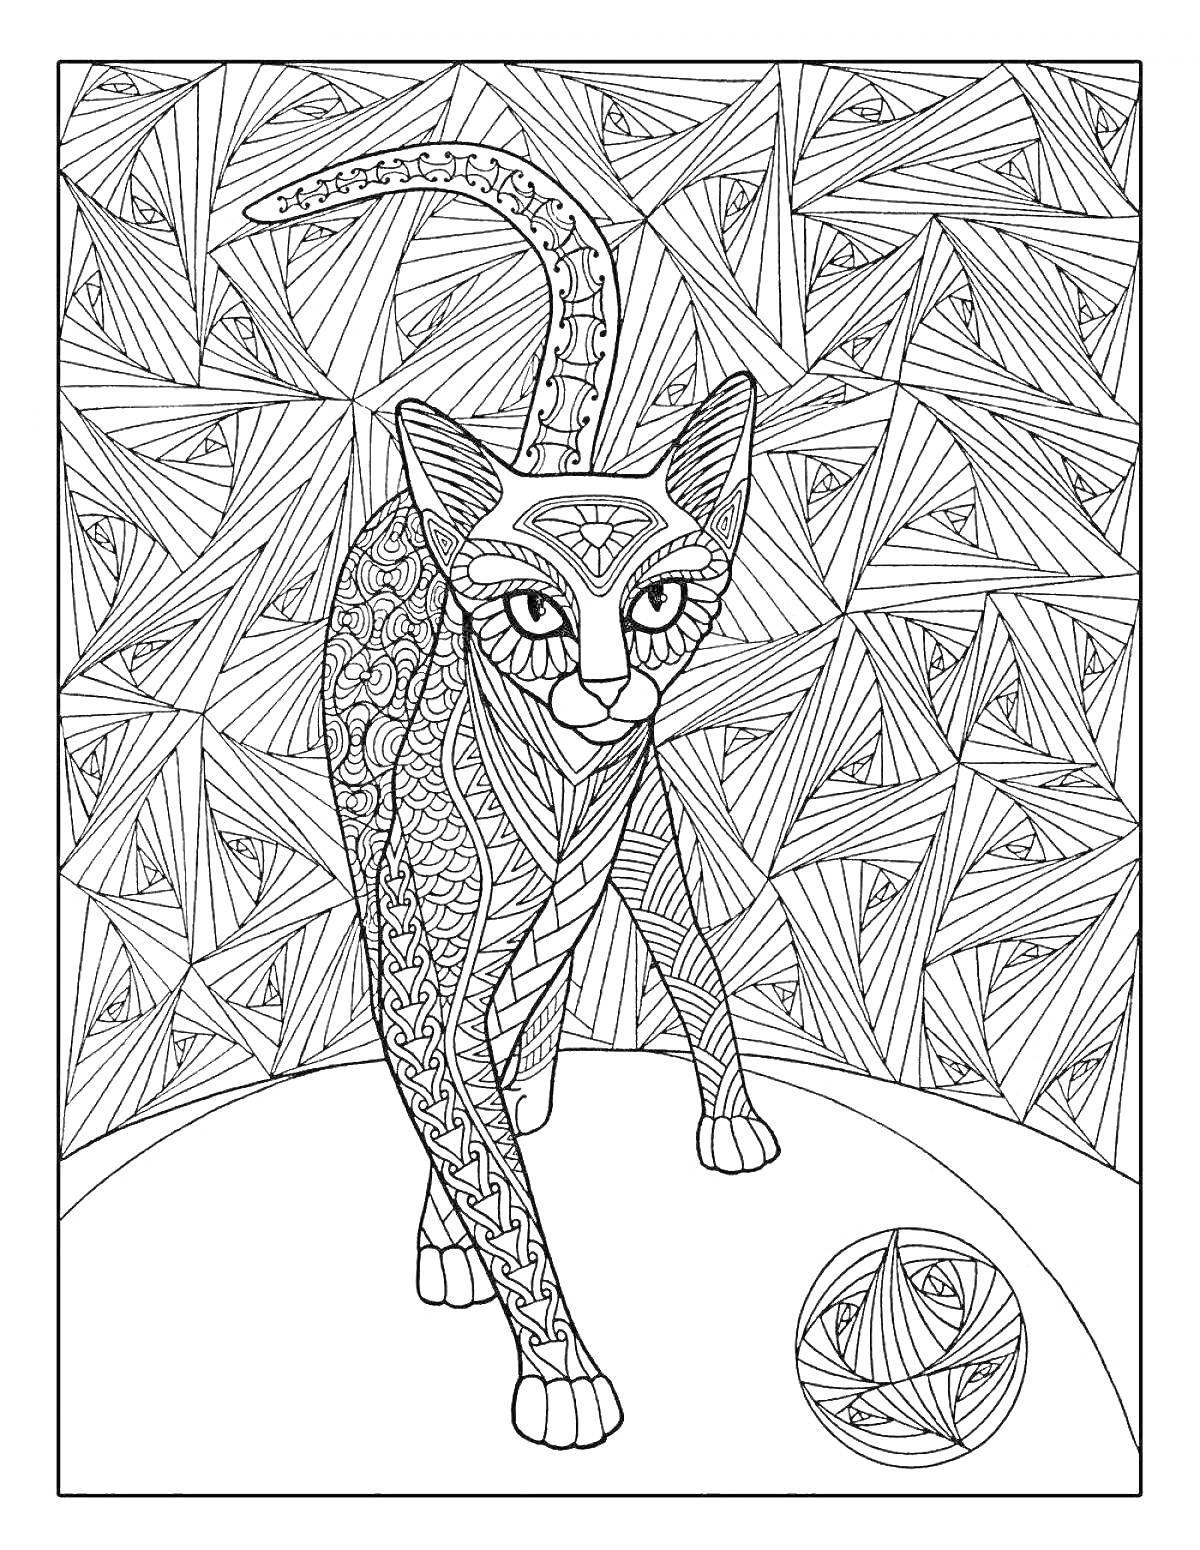 Раскраска Антистресс раскраска с кошкой на фоне геометрических узоров и узорчатым мячом